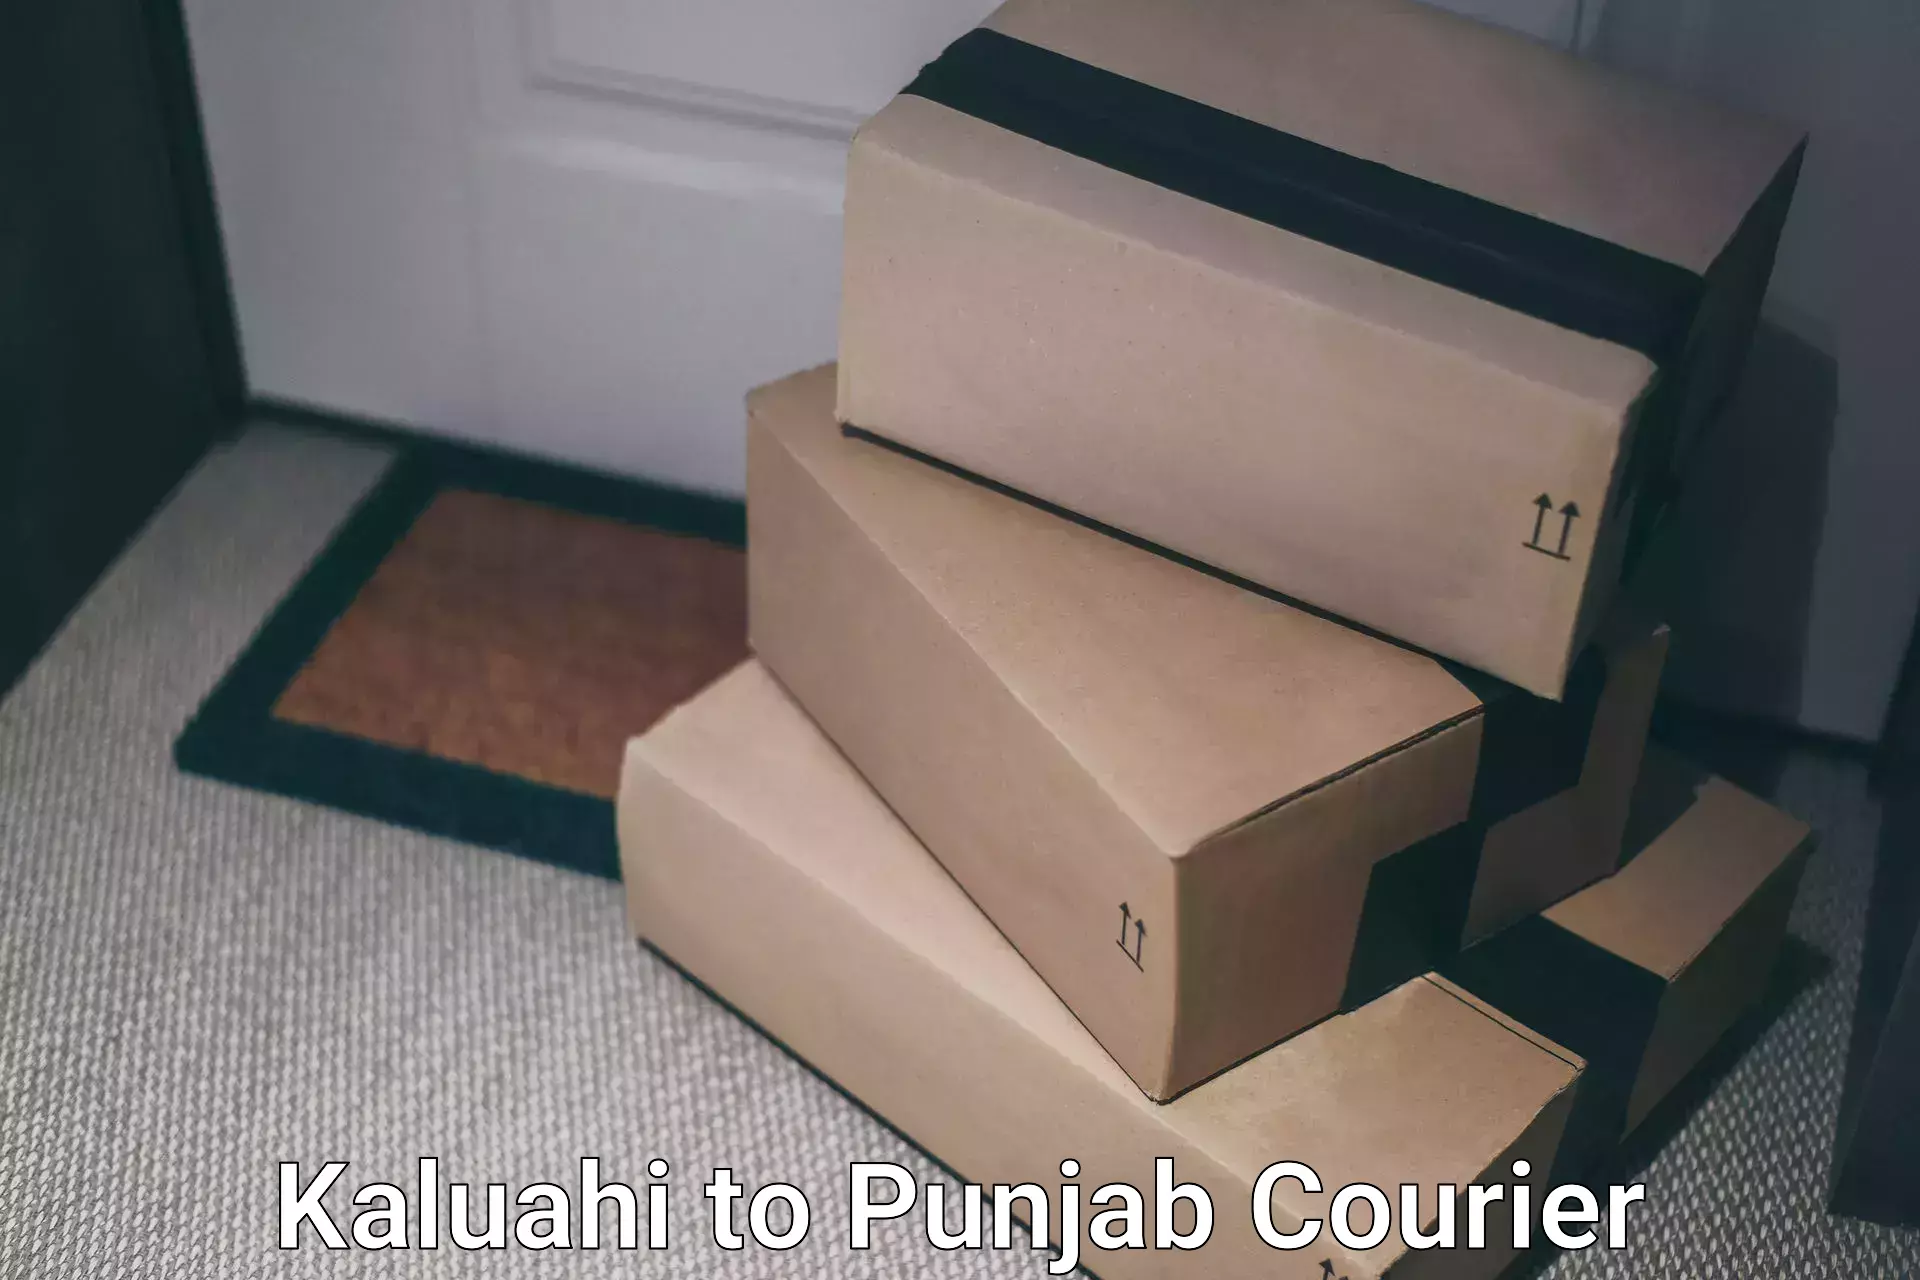 Efficient logistics management Kaluahi to Nabha